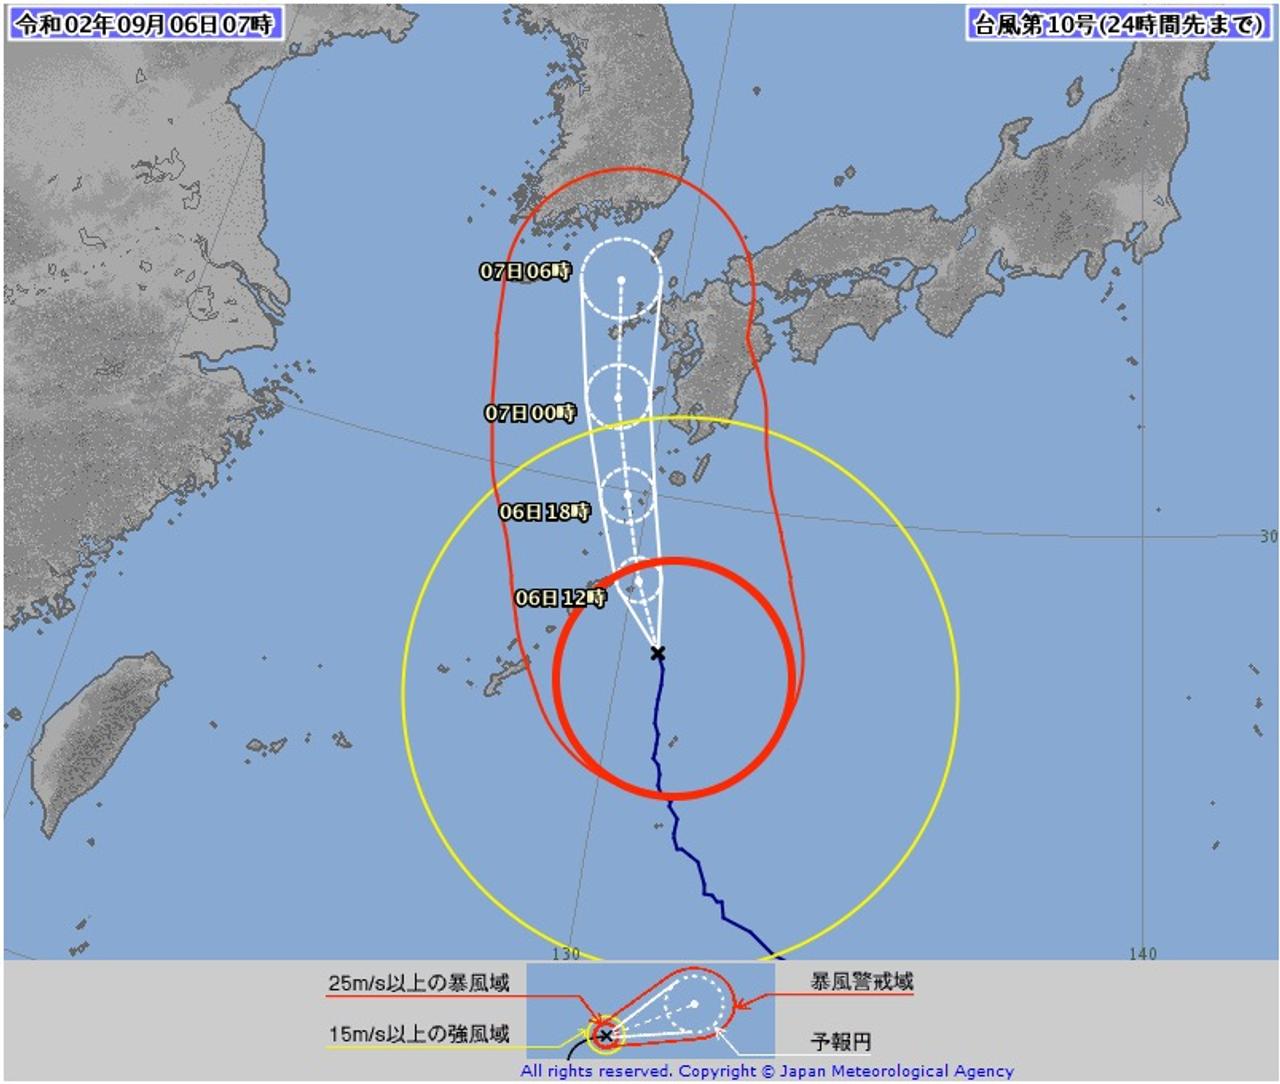 typhoon